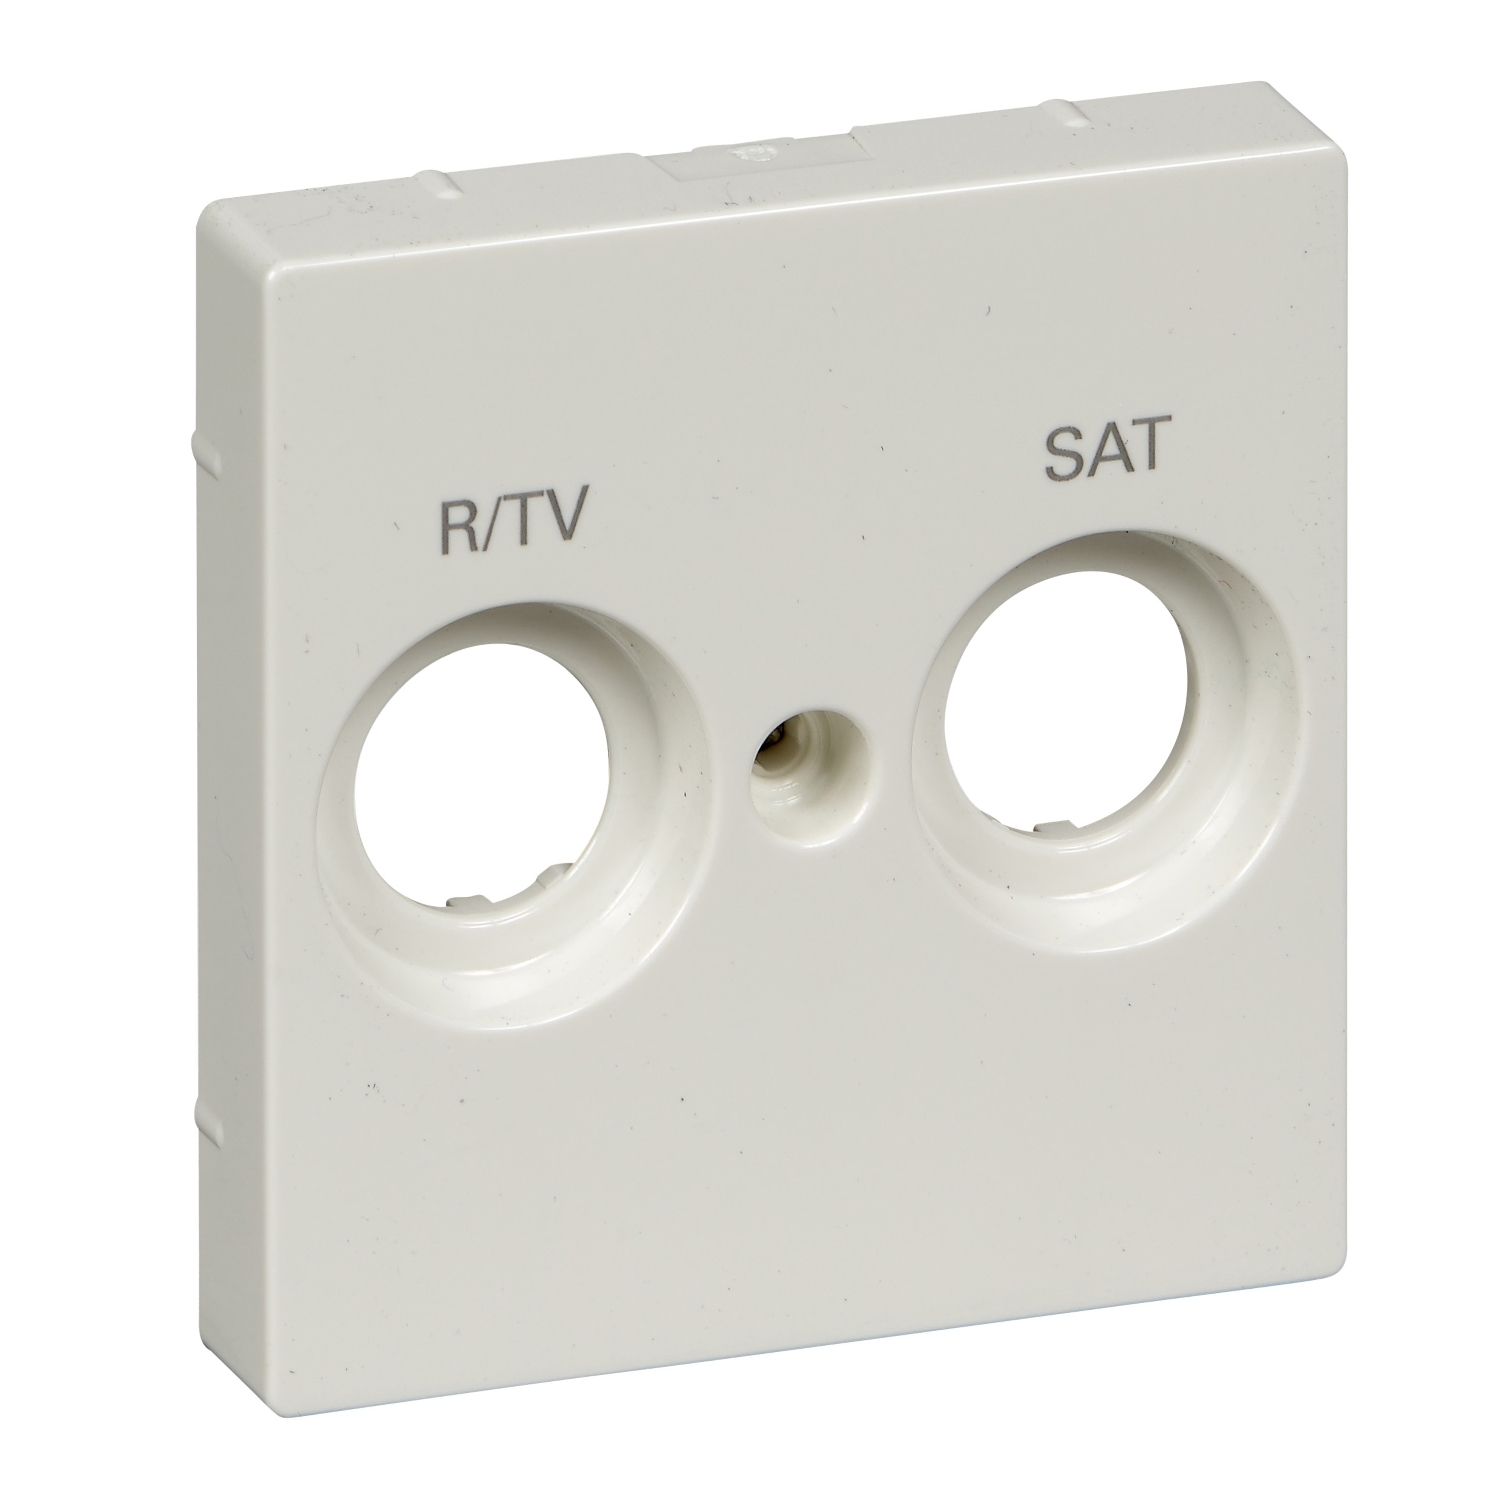 Лицевые панели Центральная плата Merten M-Plan для антенной розетки маркировкой R/TV и SAT, Schneider Electric полярно-белый MTN299819